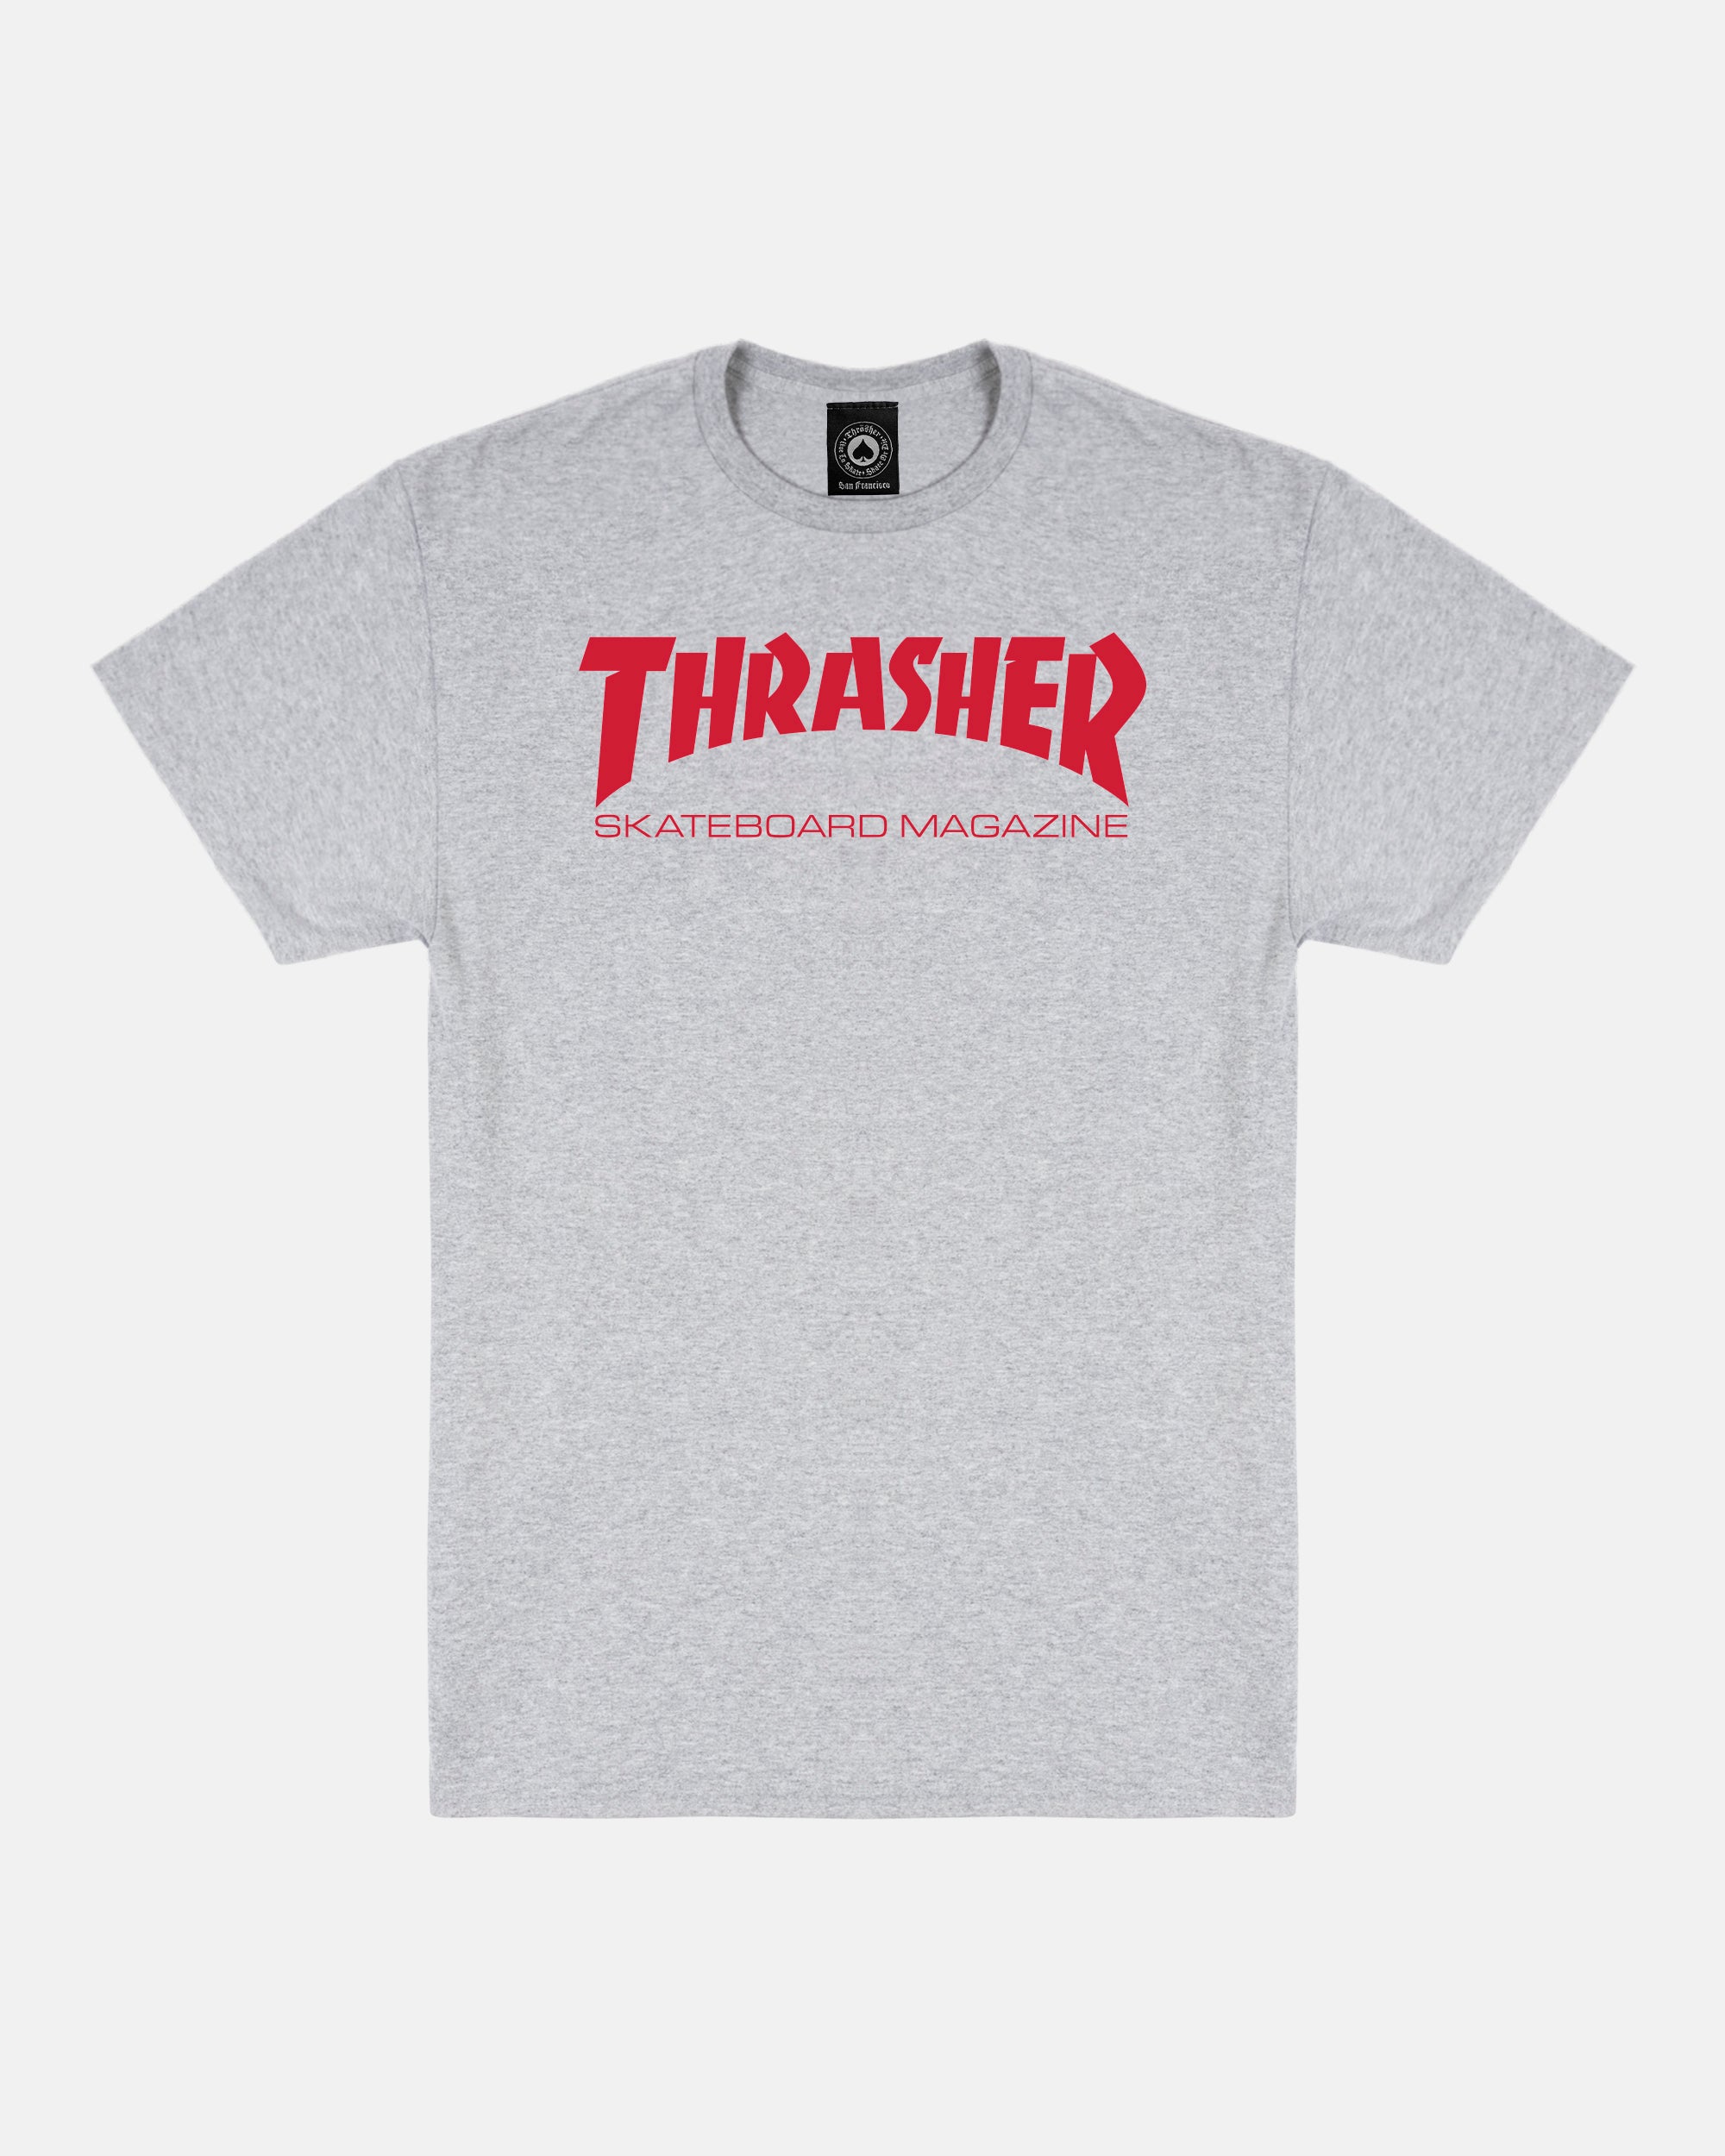 Crawl Walk Skate / Skater Shirt / Skateboard Shirt' Men's T-Shirt